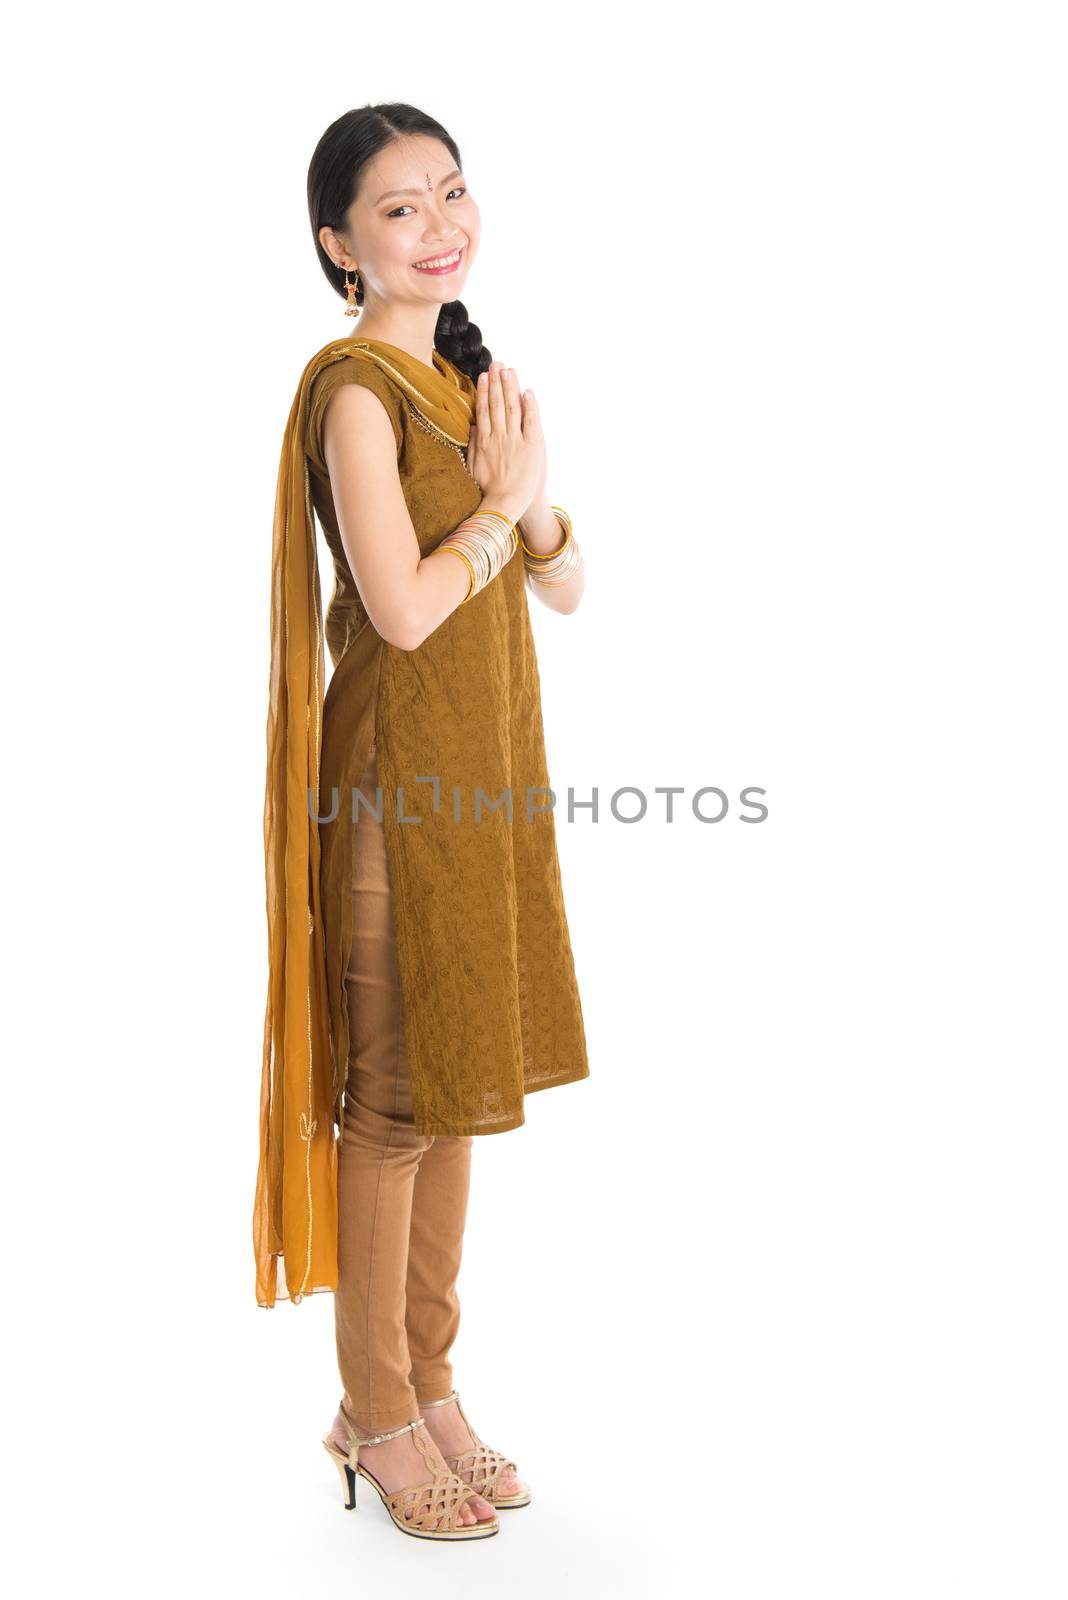 Woman in Punjabi costume greeting. by szefei